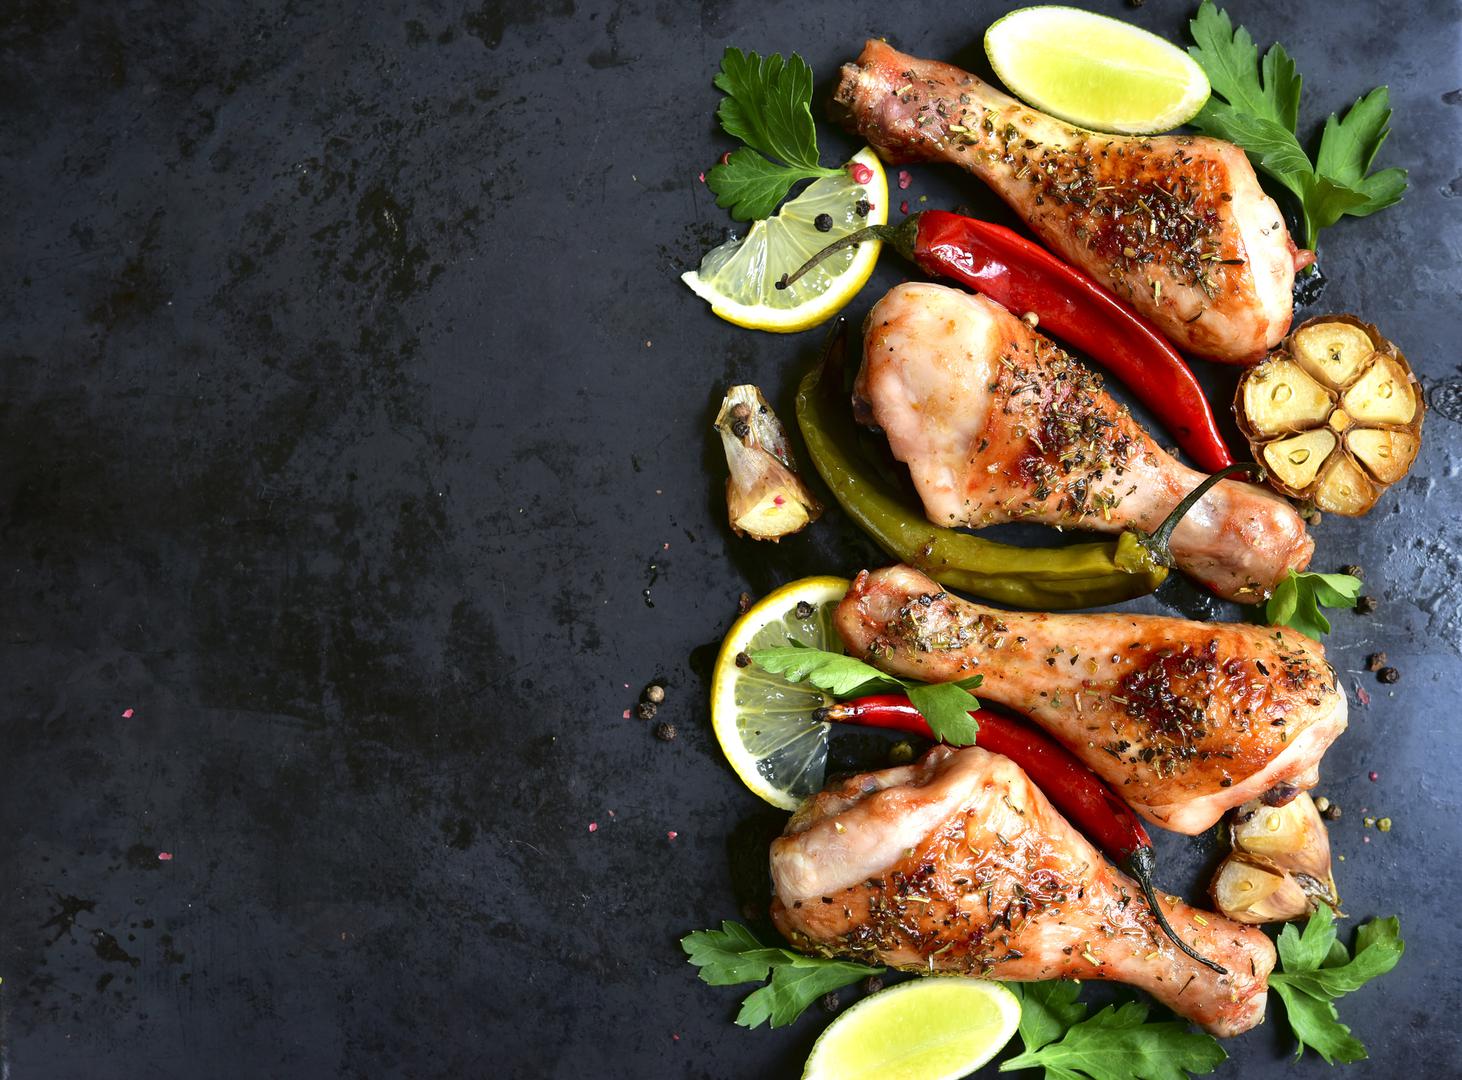 Piletina i čili – Piletina je odličan izvor proteina, a čili začin sadrži kapsaicin, kemijski spoj koji ubrzava metabolizam.